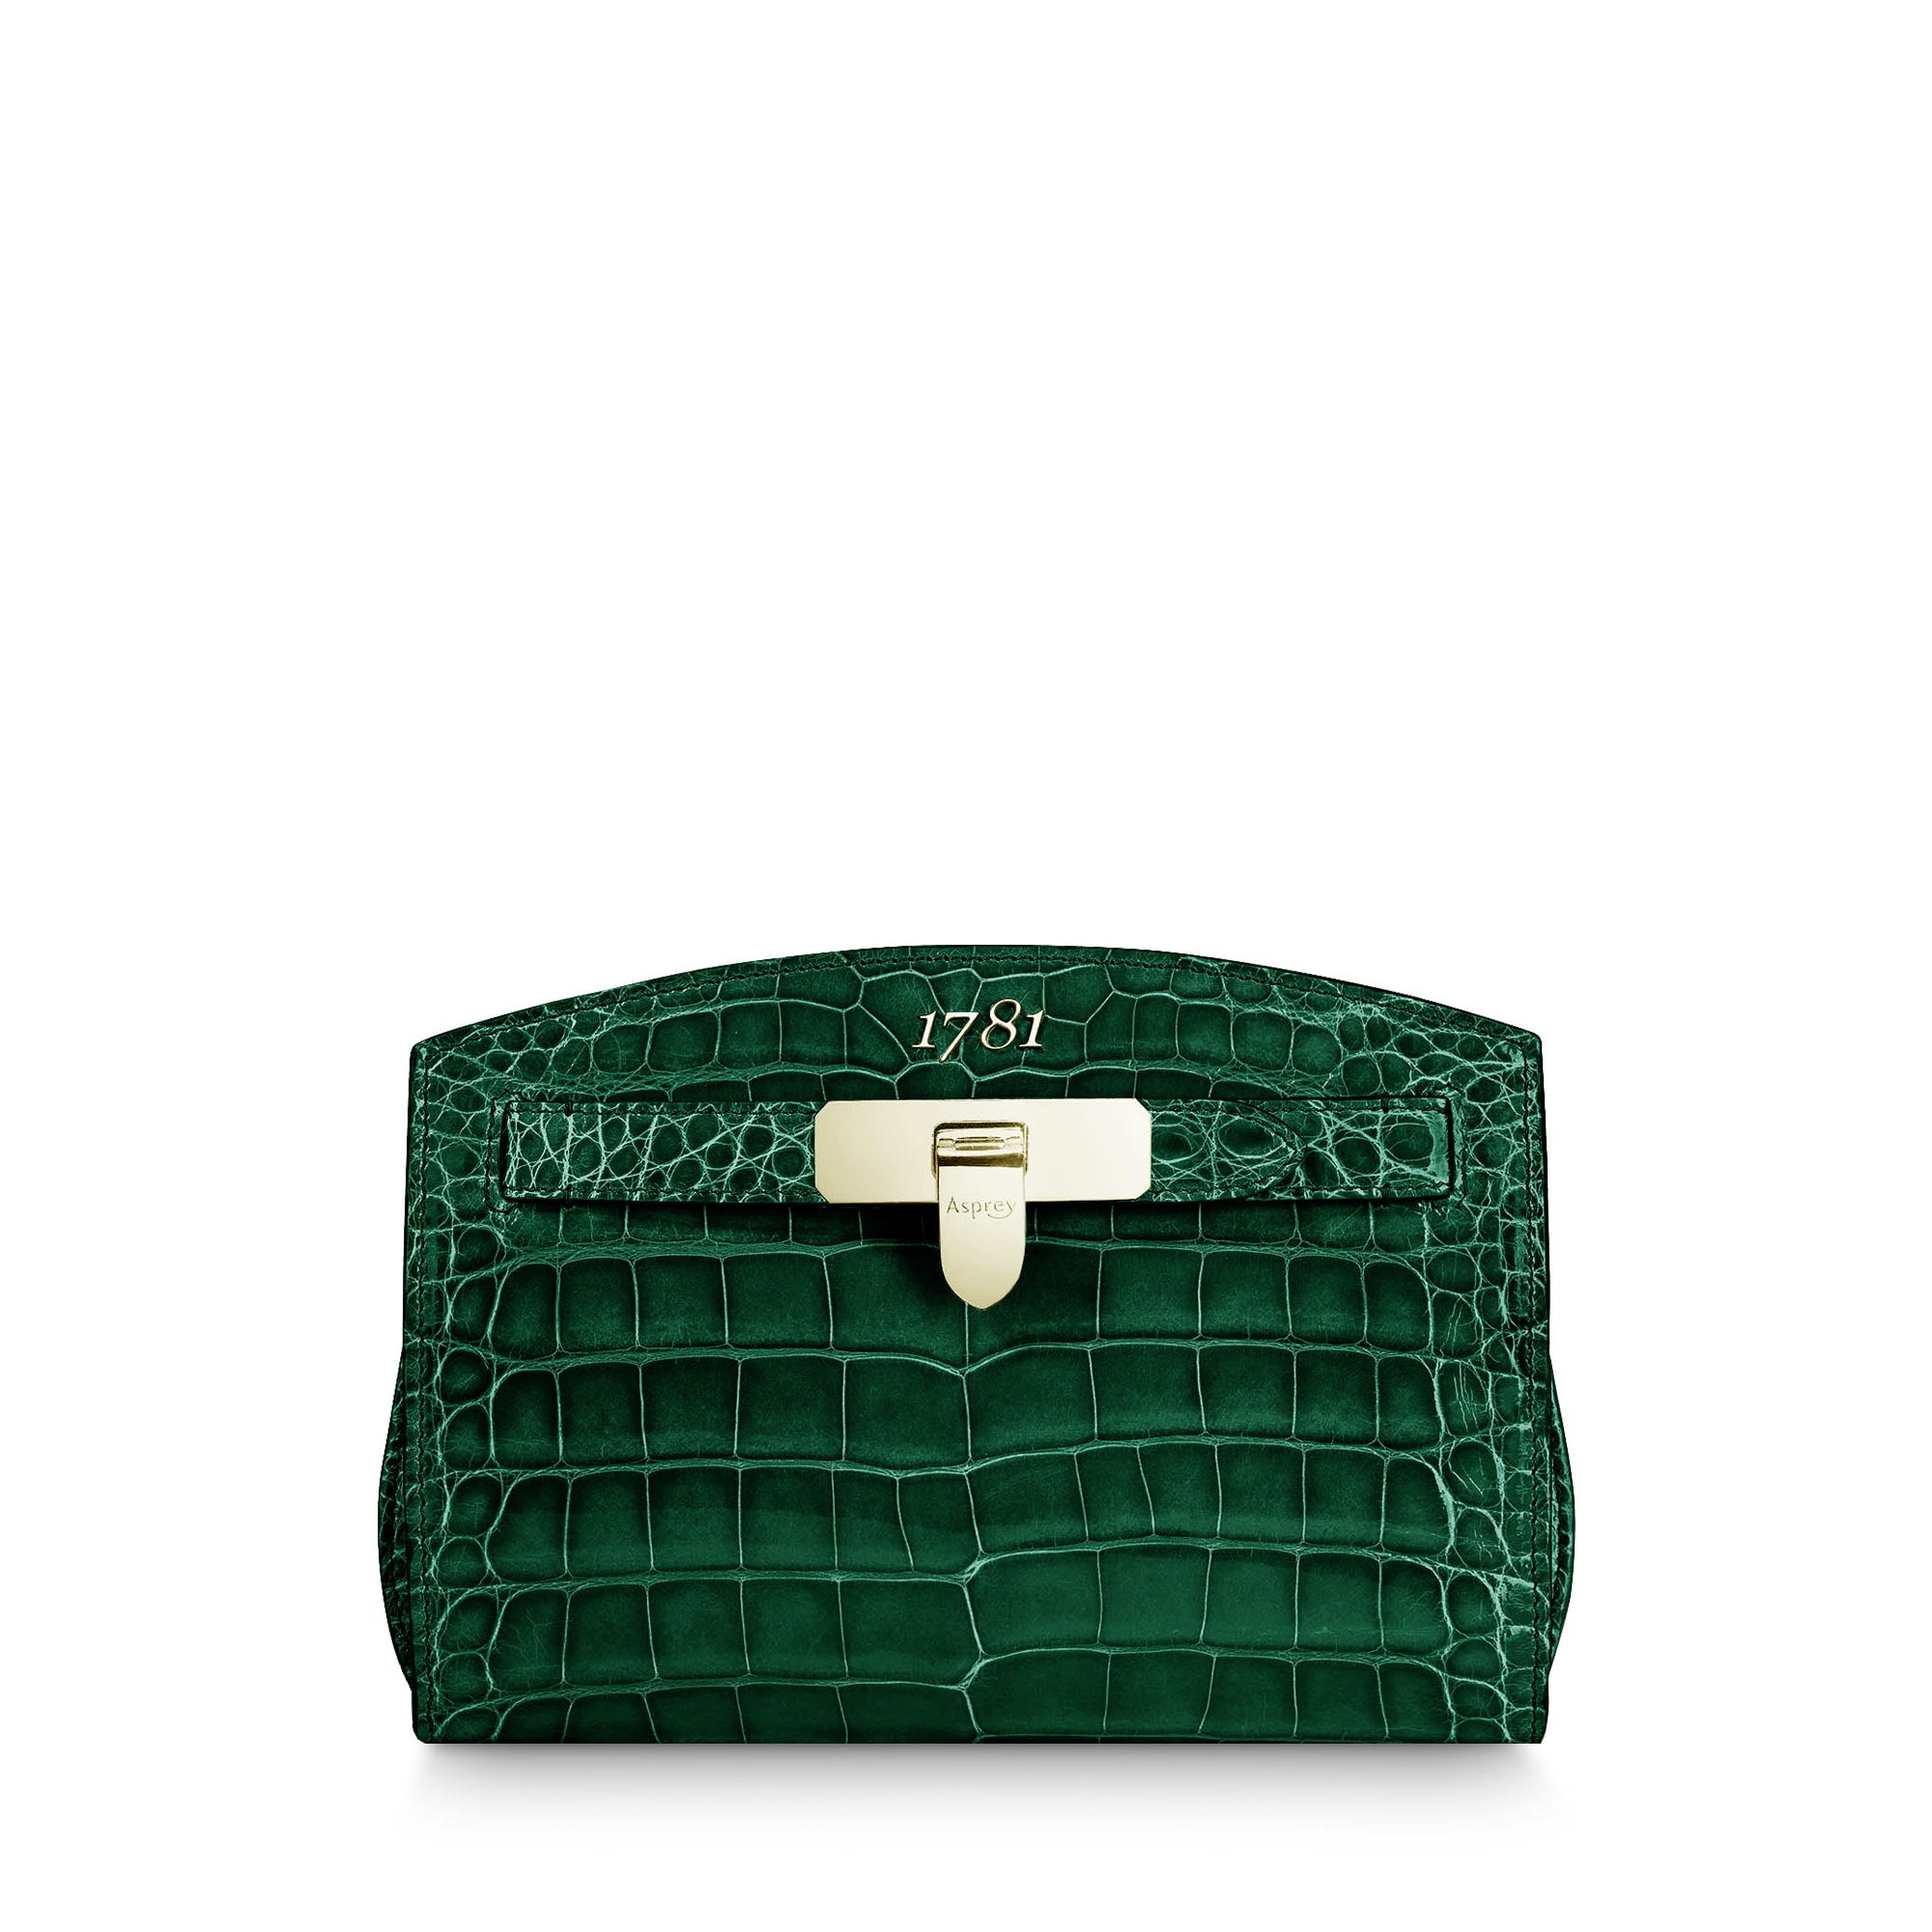 1781 Pochette Handbag in Emerald Green Crocodile